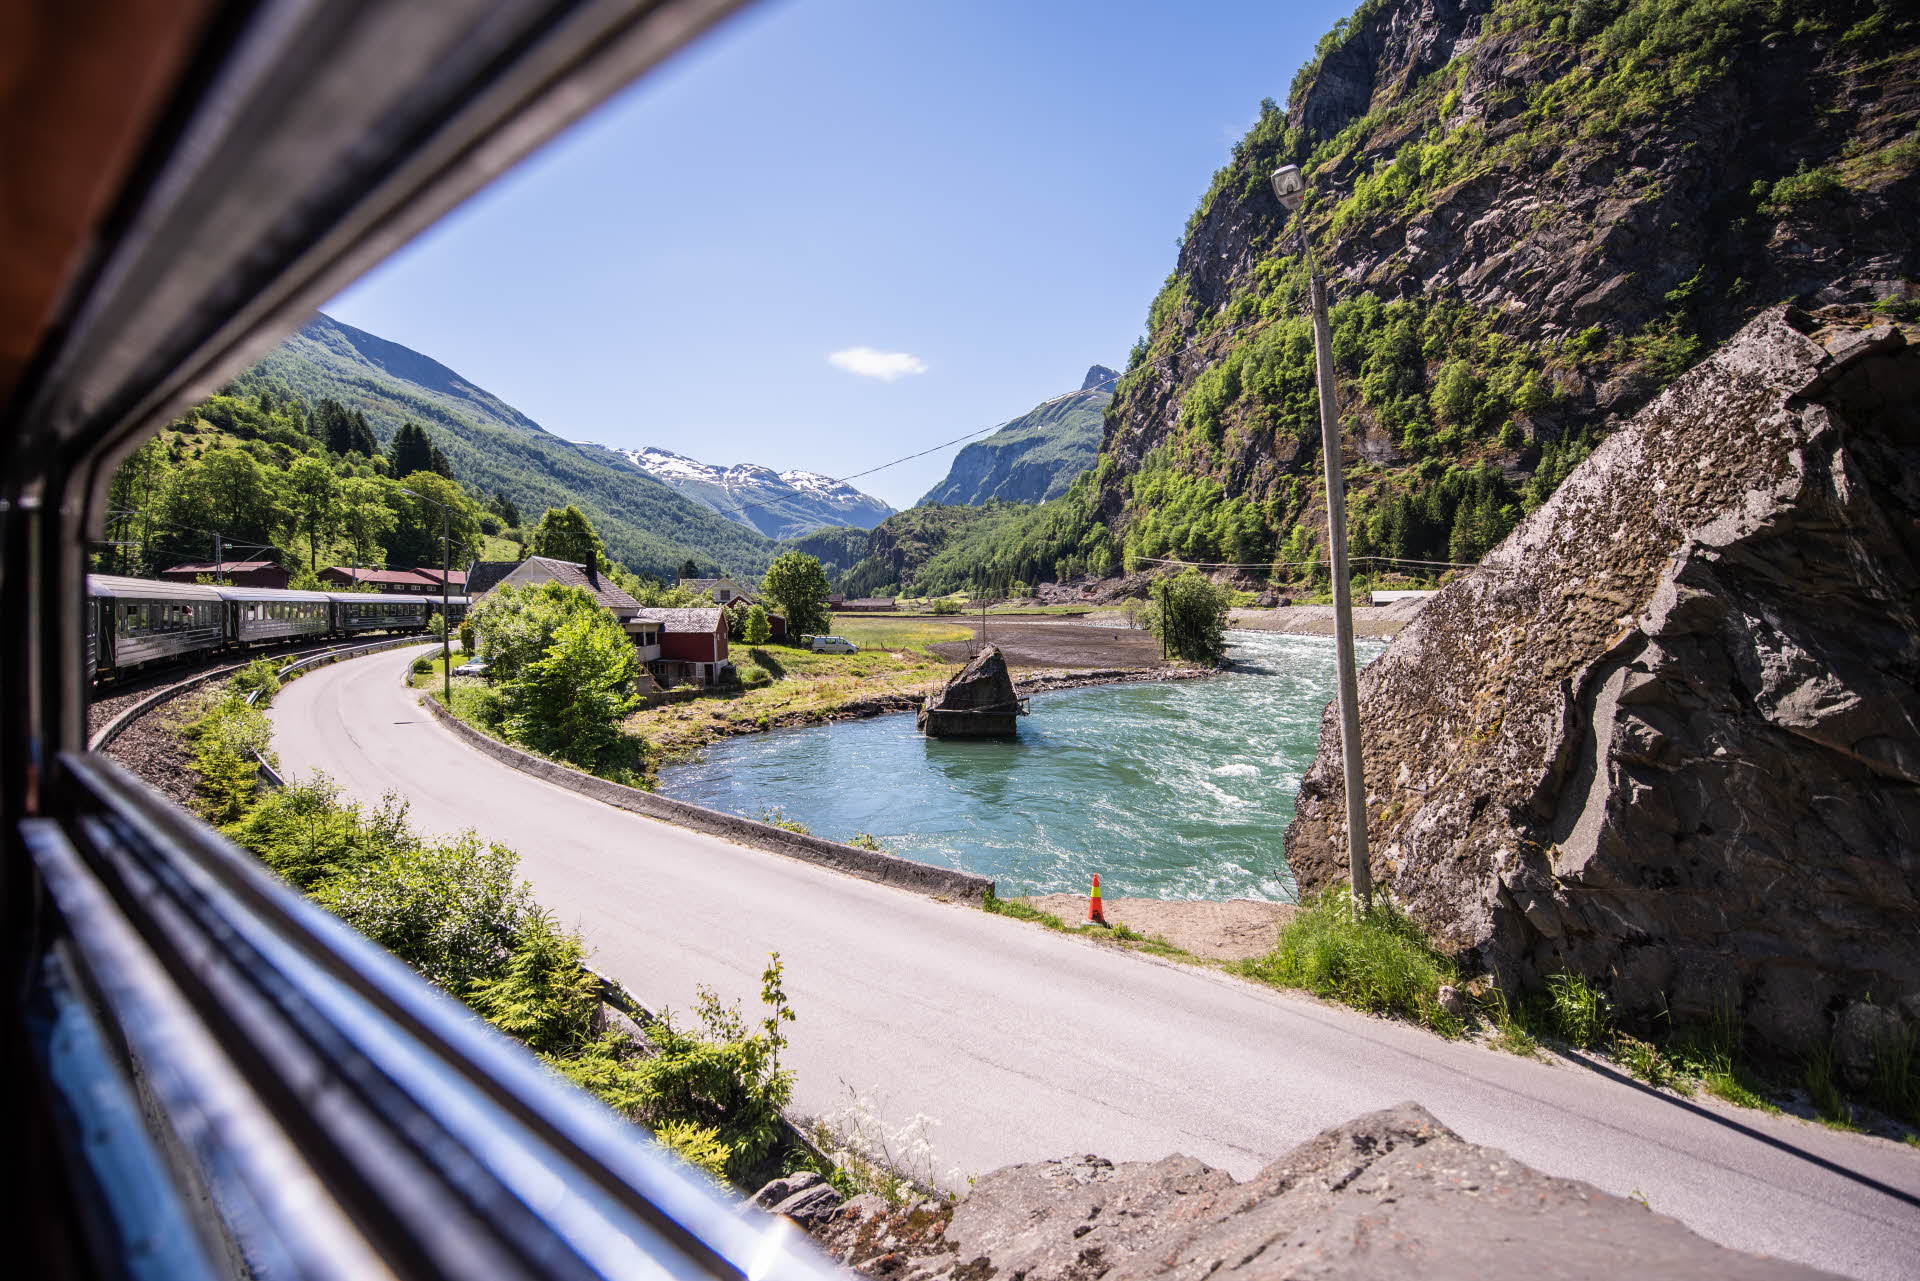 Vue depuis l’intérieur de la Flåmsbana alors que le train traverse la rivière dans un virage parallèle à la route, sur fond de montagnes luxuriantes